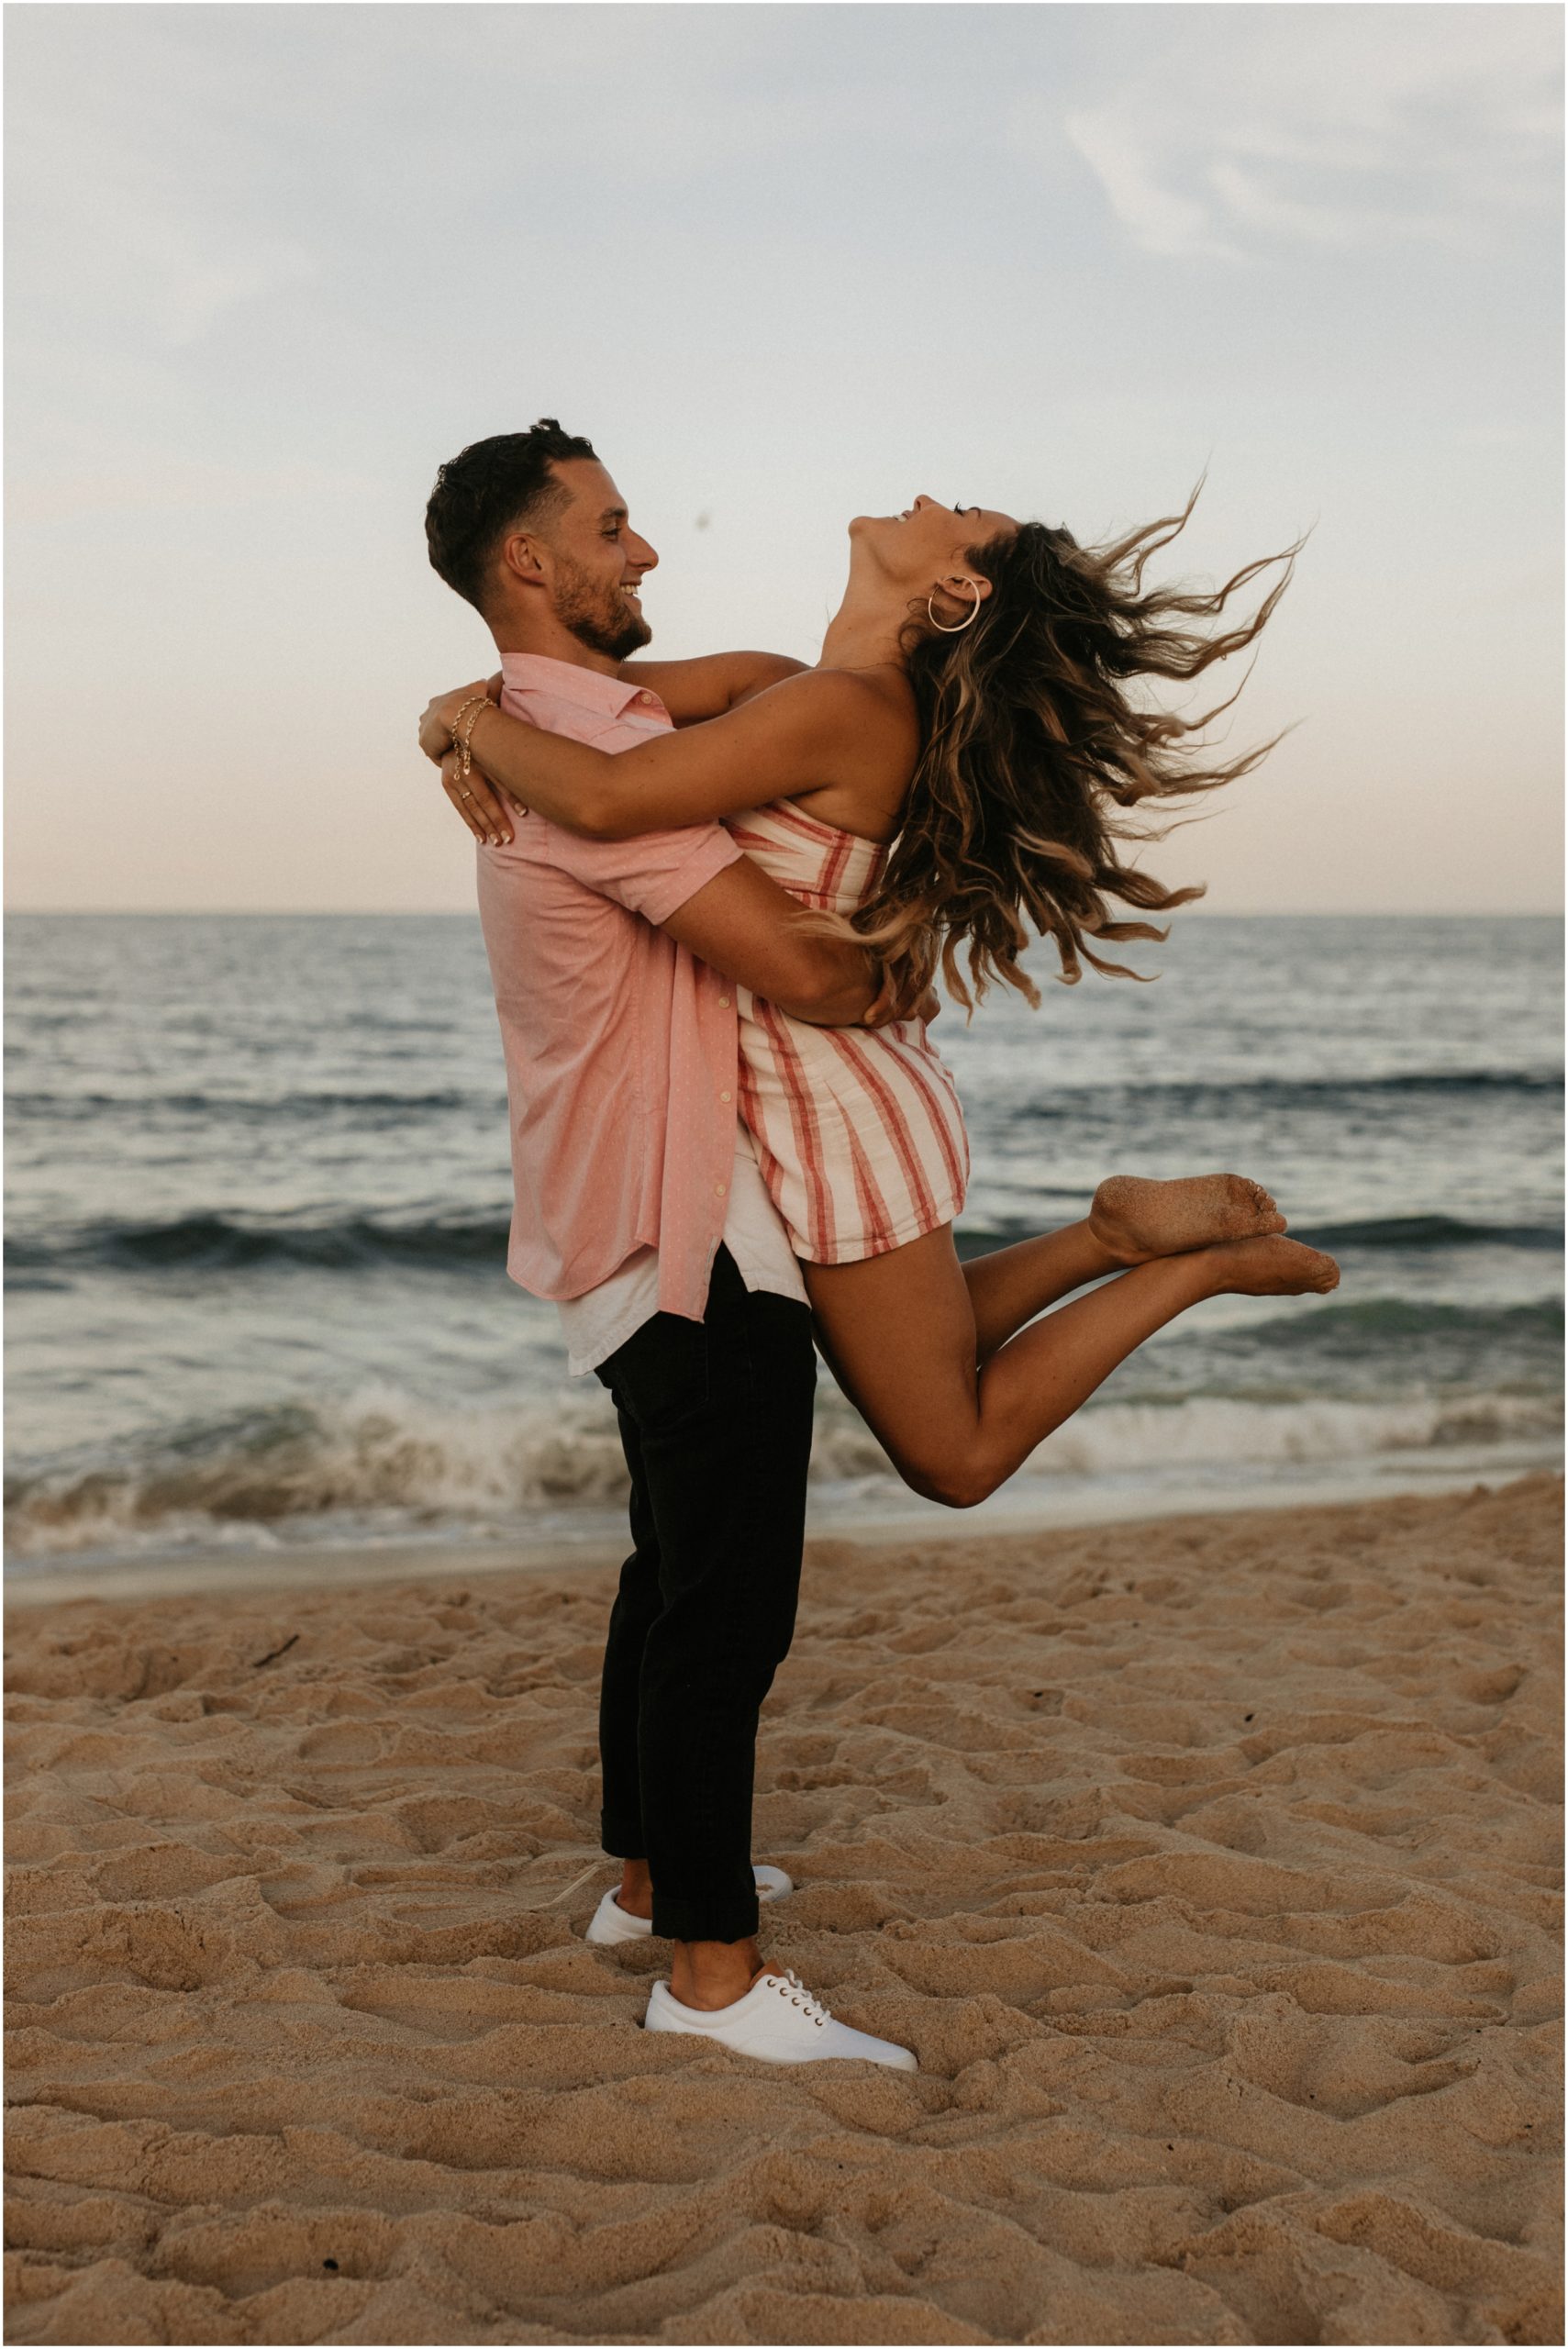 man lifting woman on beach